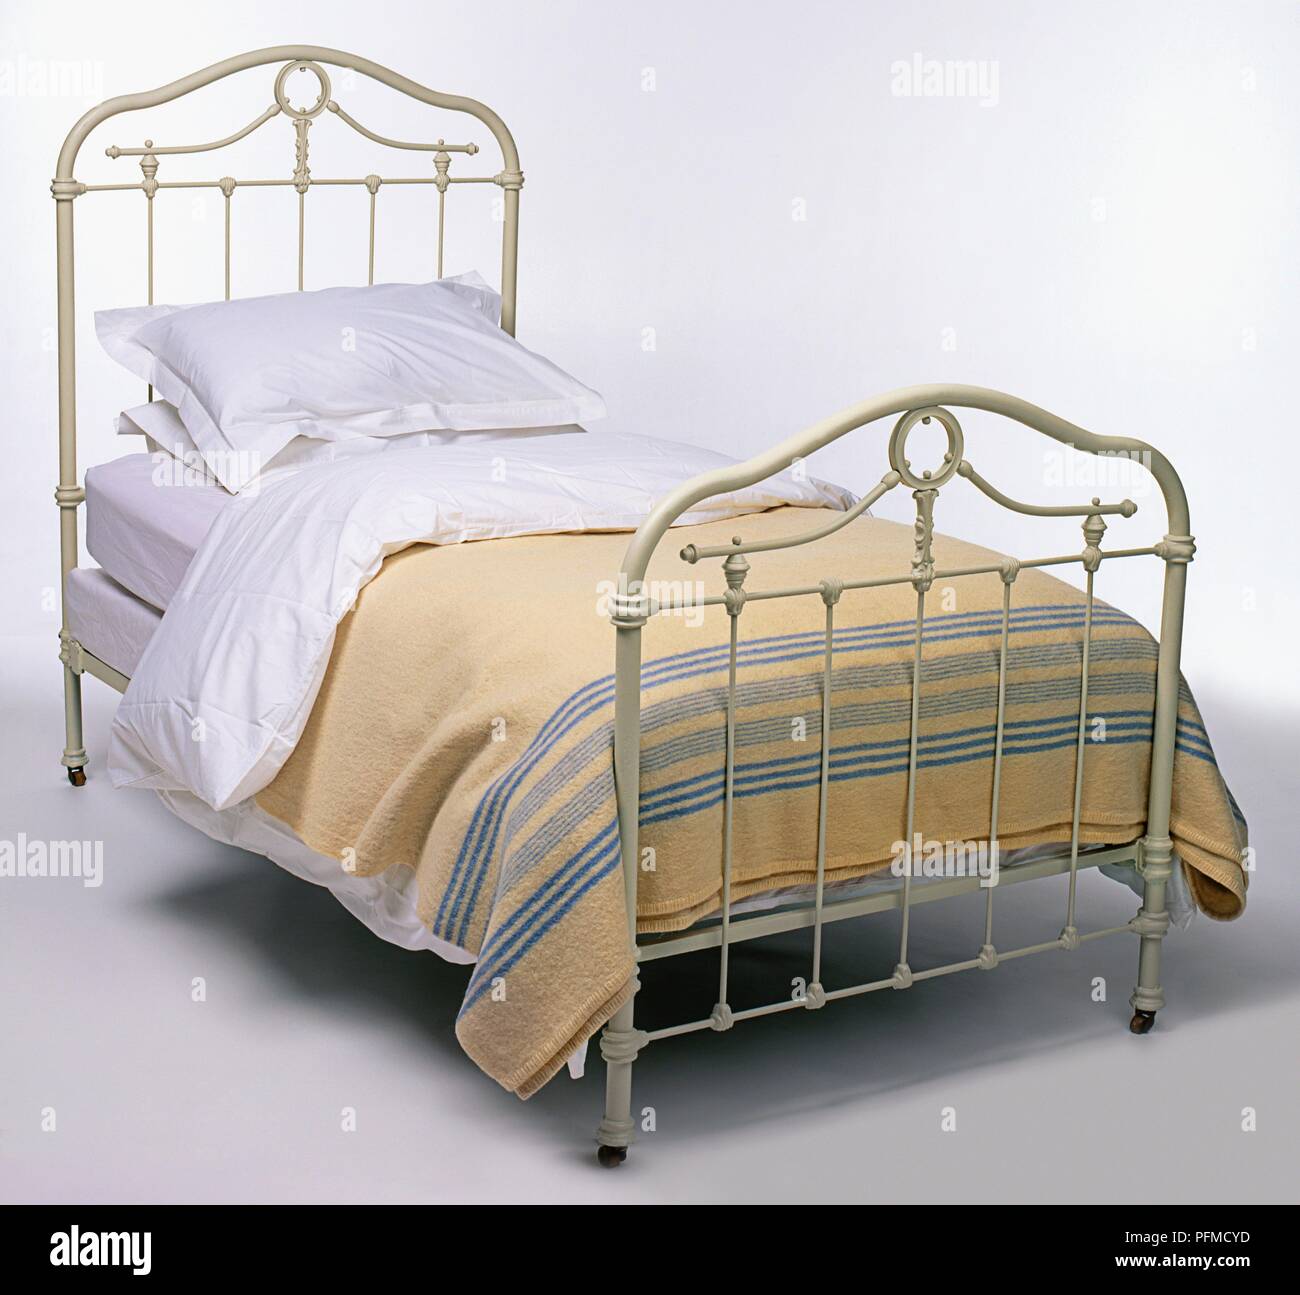 Messing antik Bett mit Bettwäsche aus Baumwolle und Wolle abgedeckt  Stockfotografie - Alamy